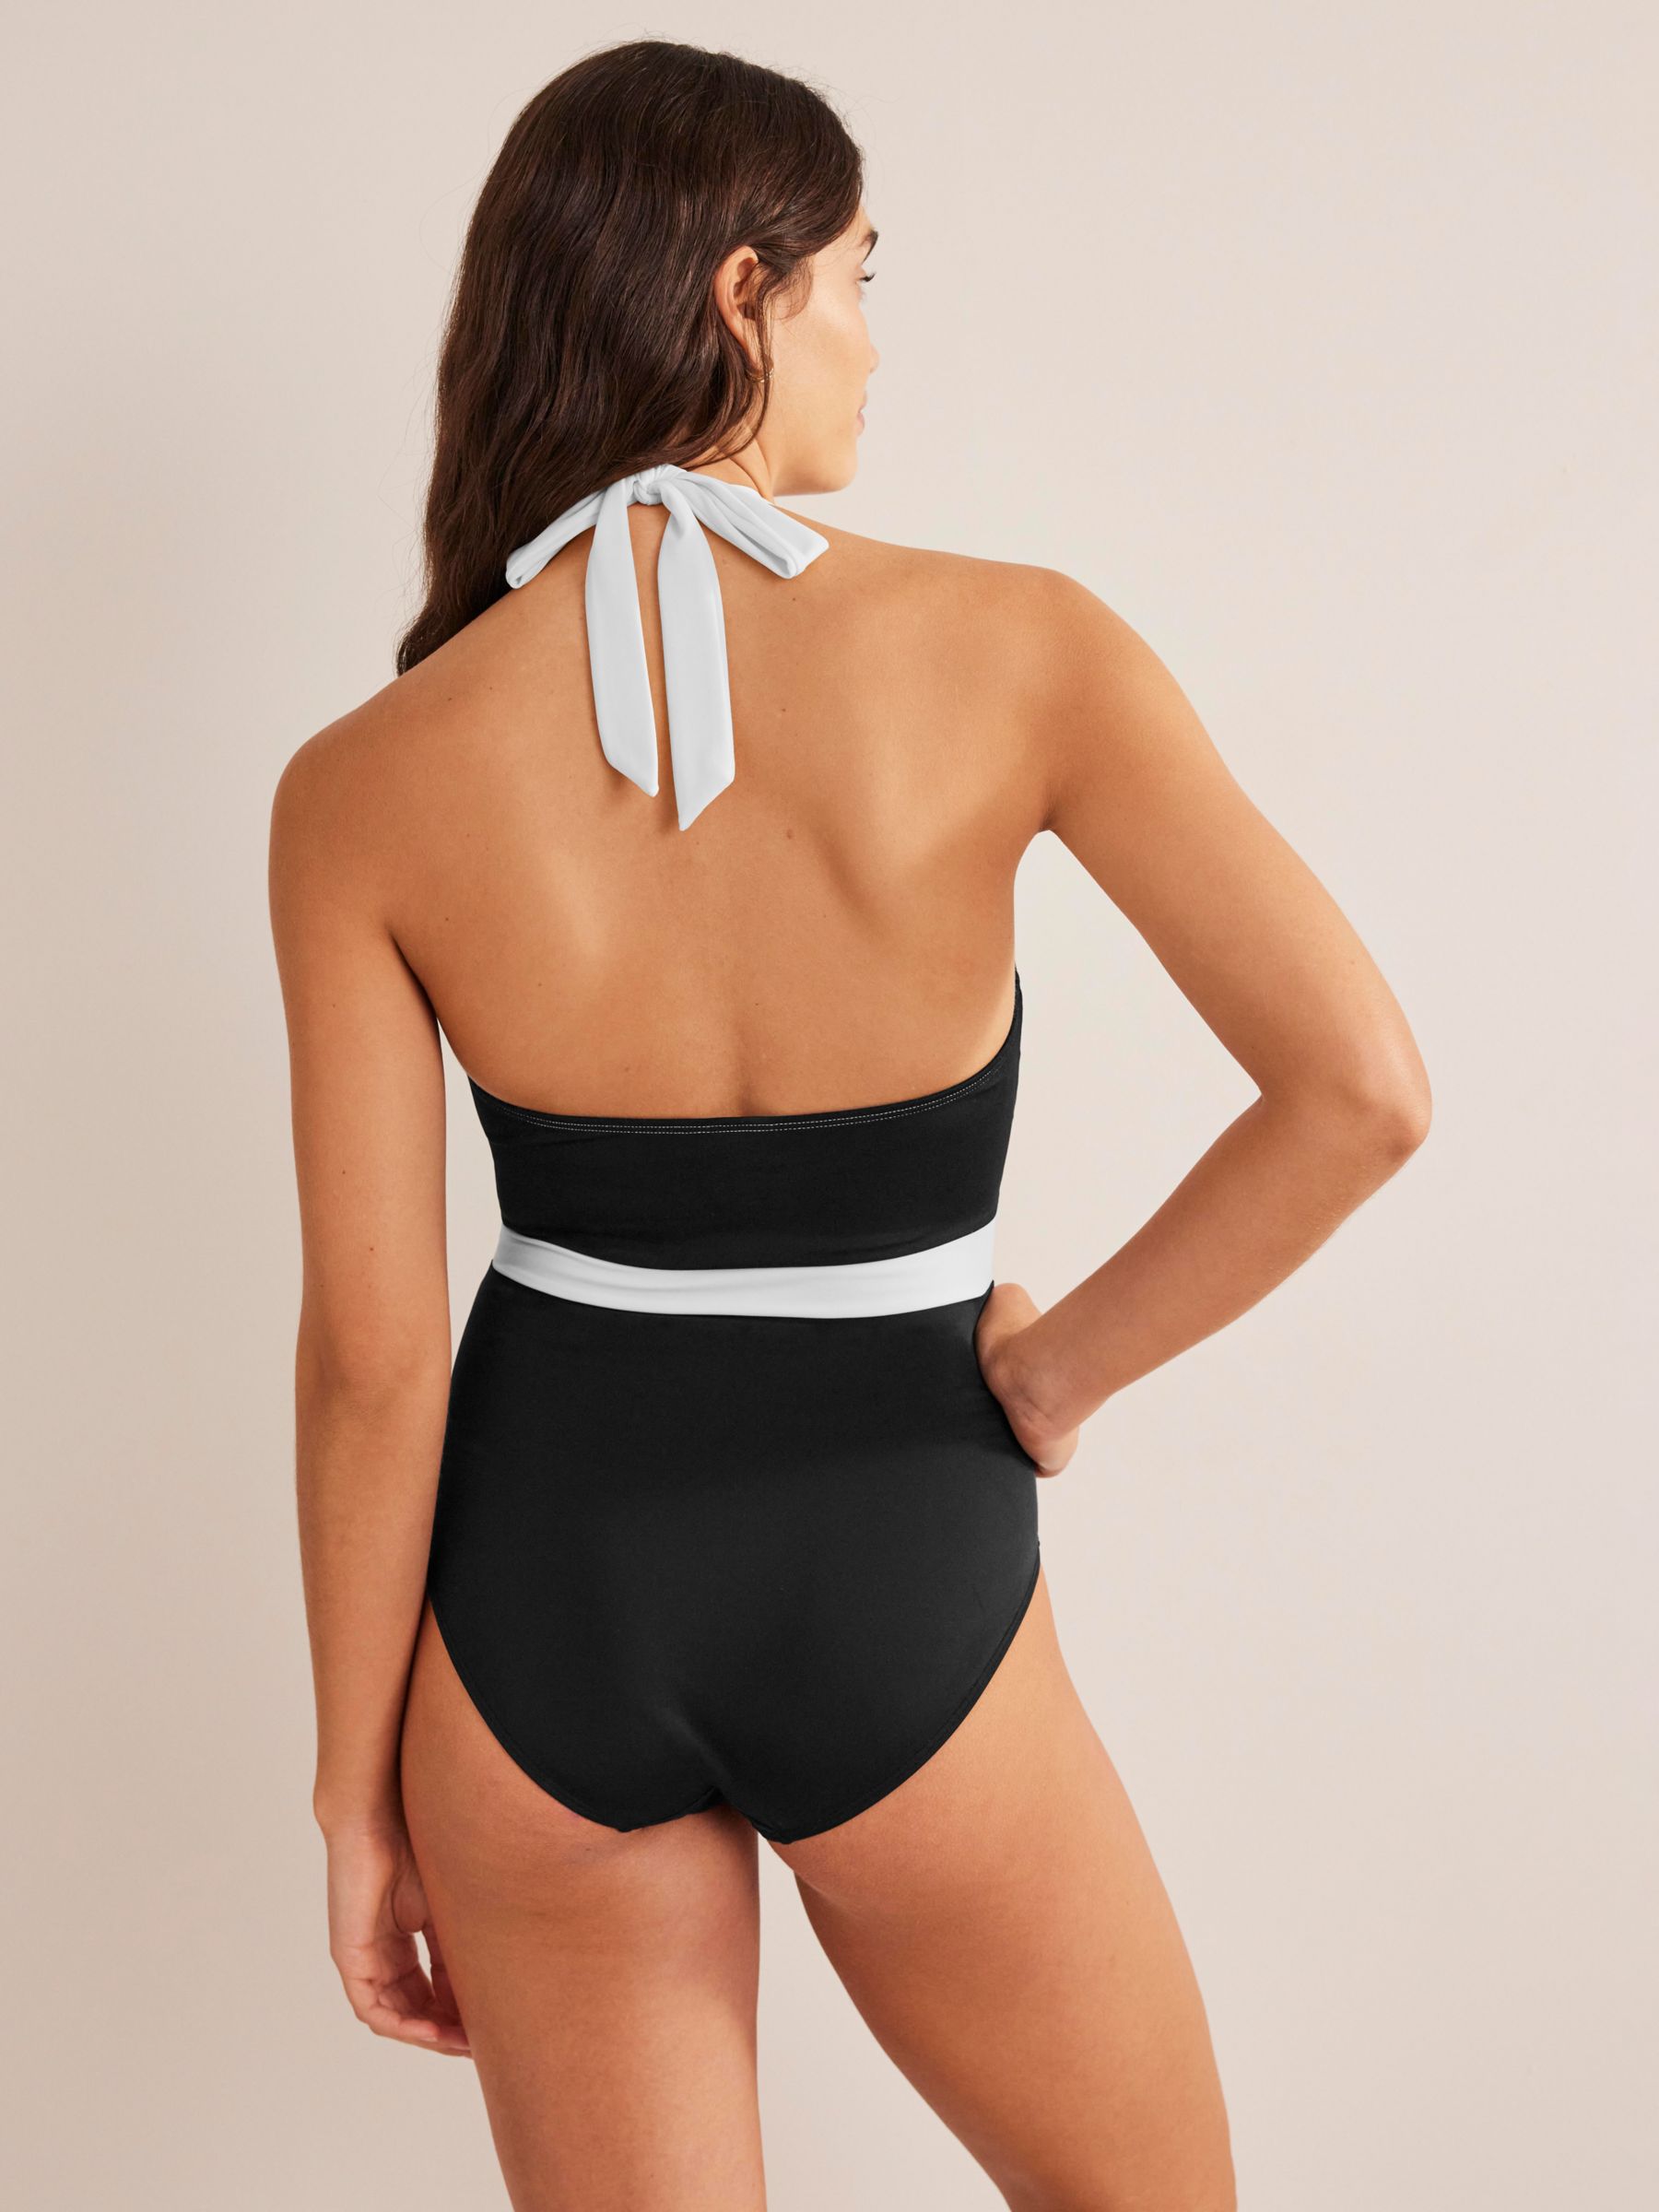 Boden Kefalonia Colour Block Halterneck Swimsuit, Black/White, 16